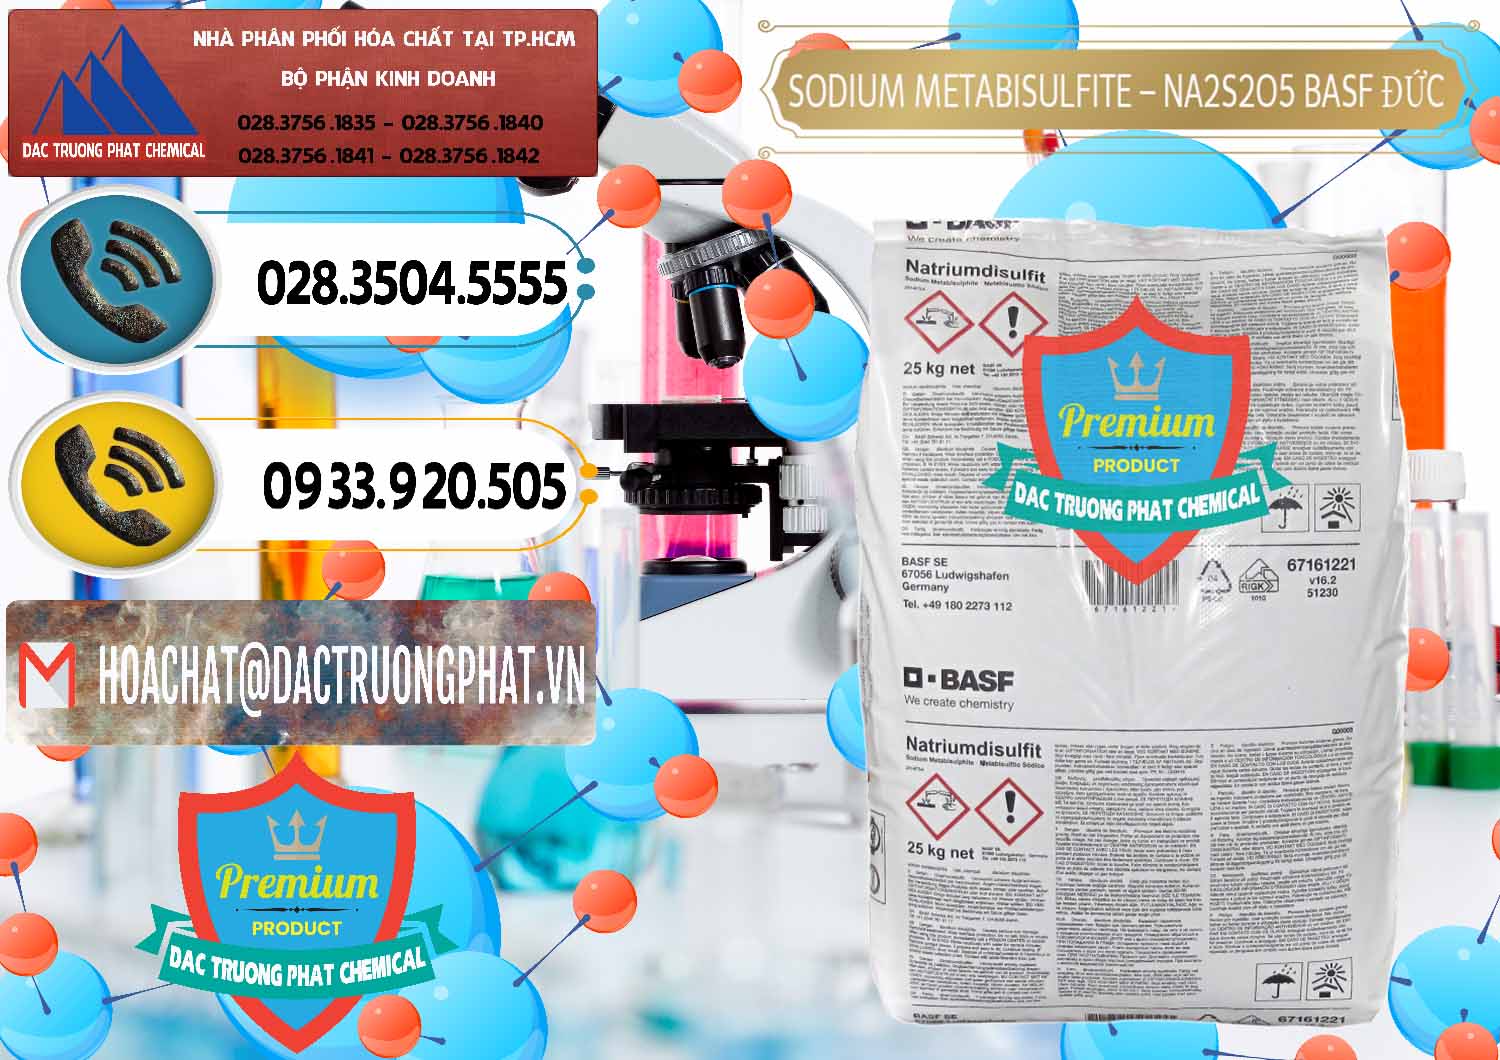 Công ty chuyên bán ( phân phối ) Sodium Metabisulfite - NA2S2O5 Food Grade BASF Đức Germany - 0143 - Nơi chuyên kinh doanh _ cung cấp hóa chất tại TP.HCM - hoachatdetnhuom.vn